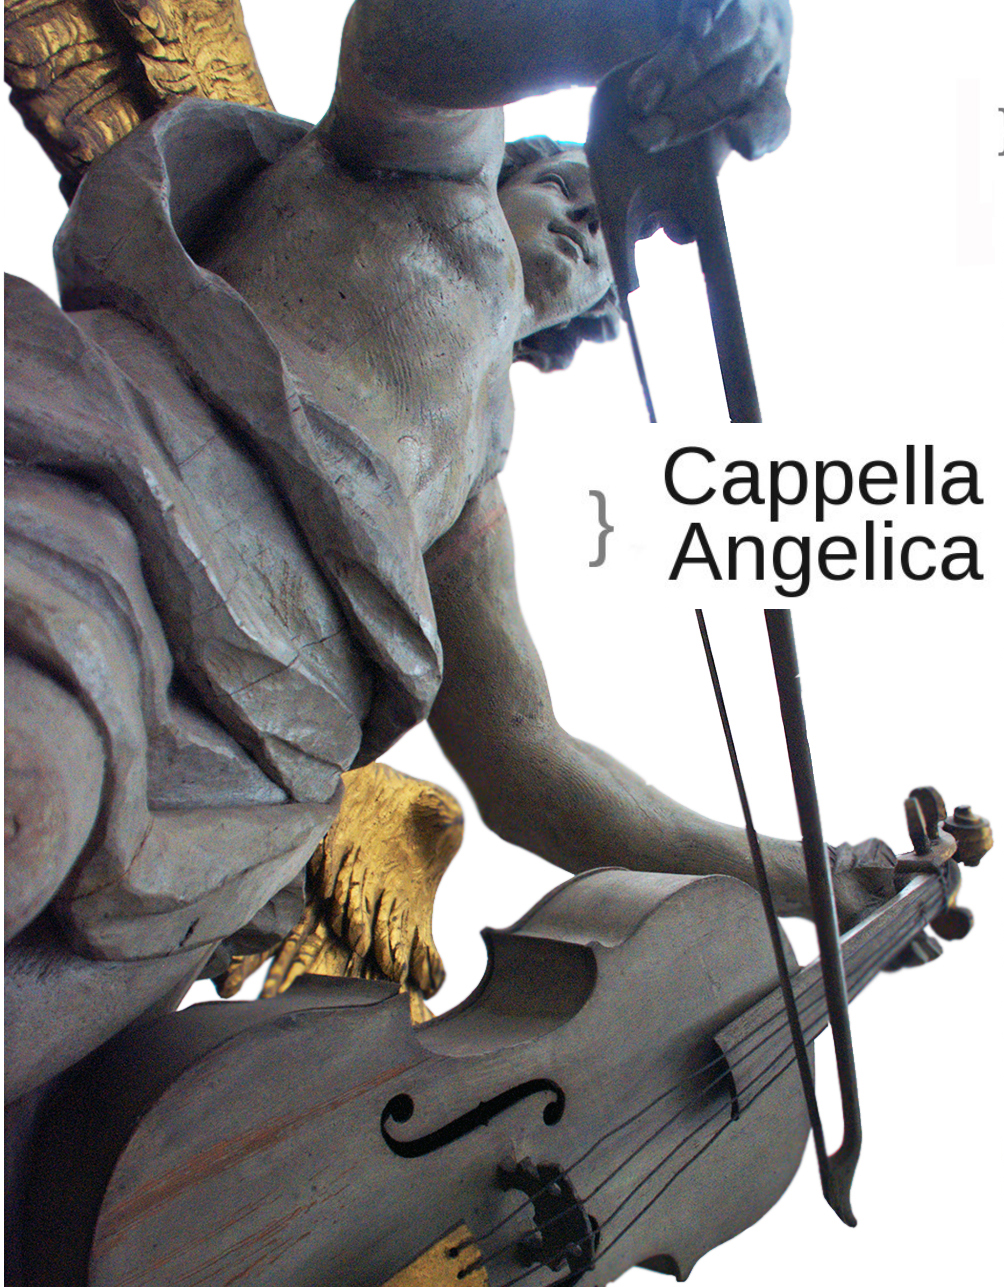 Capella Angelica, czyli Muzyka Aniołów Mariackich (źródło: materiały prasowe organizatora)